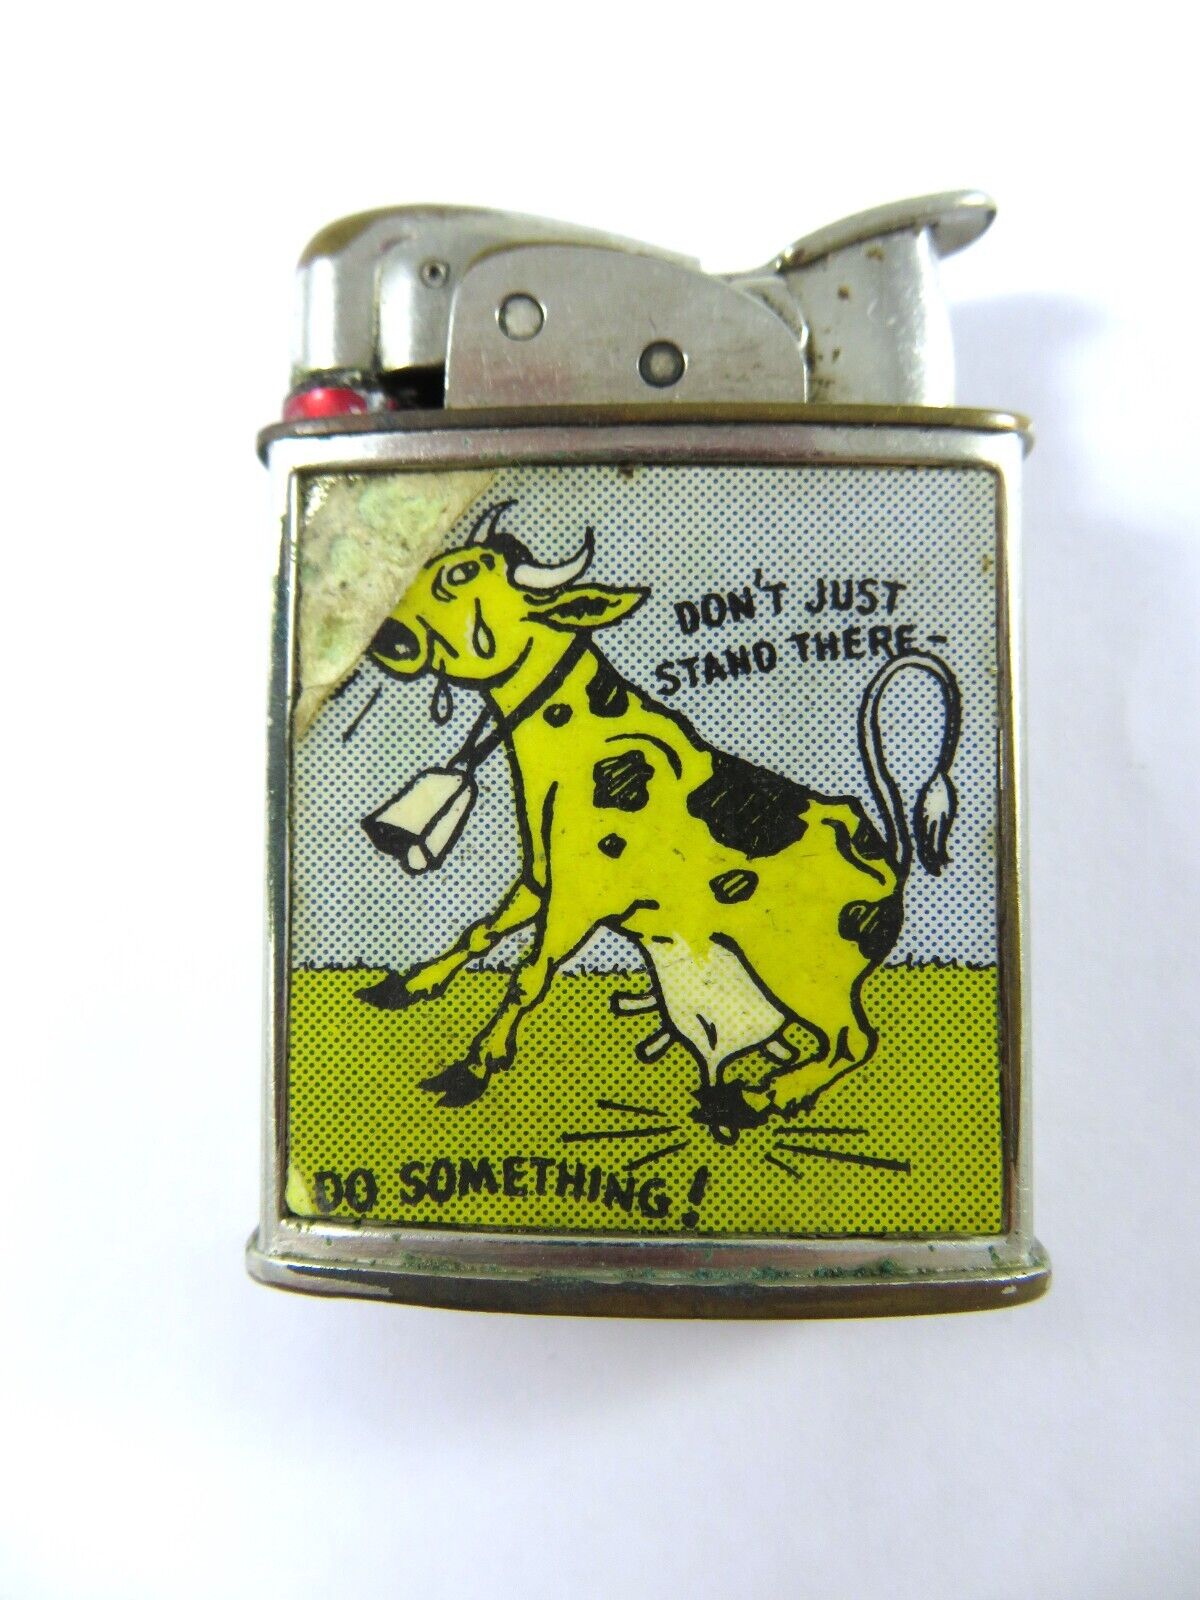 Vintage Evans Pocket Lighter Novelty Cow Cartoon Illustration Udder Humor 1950s